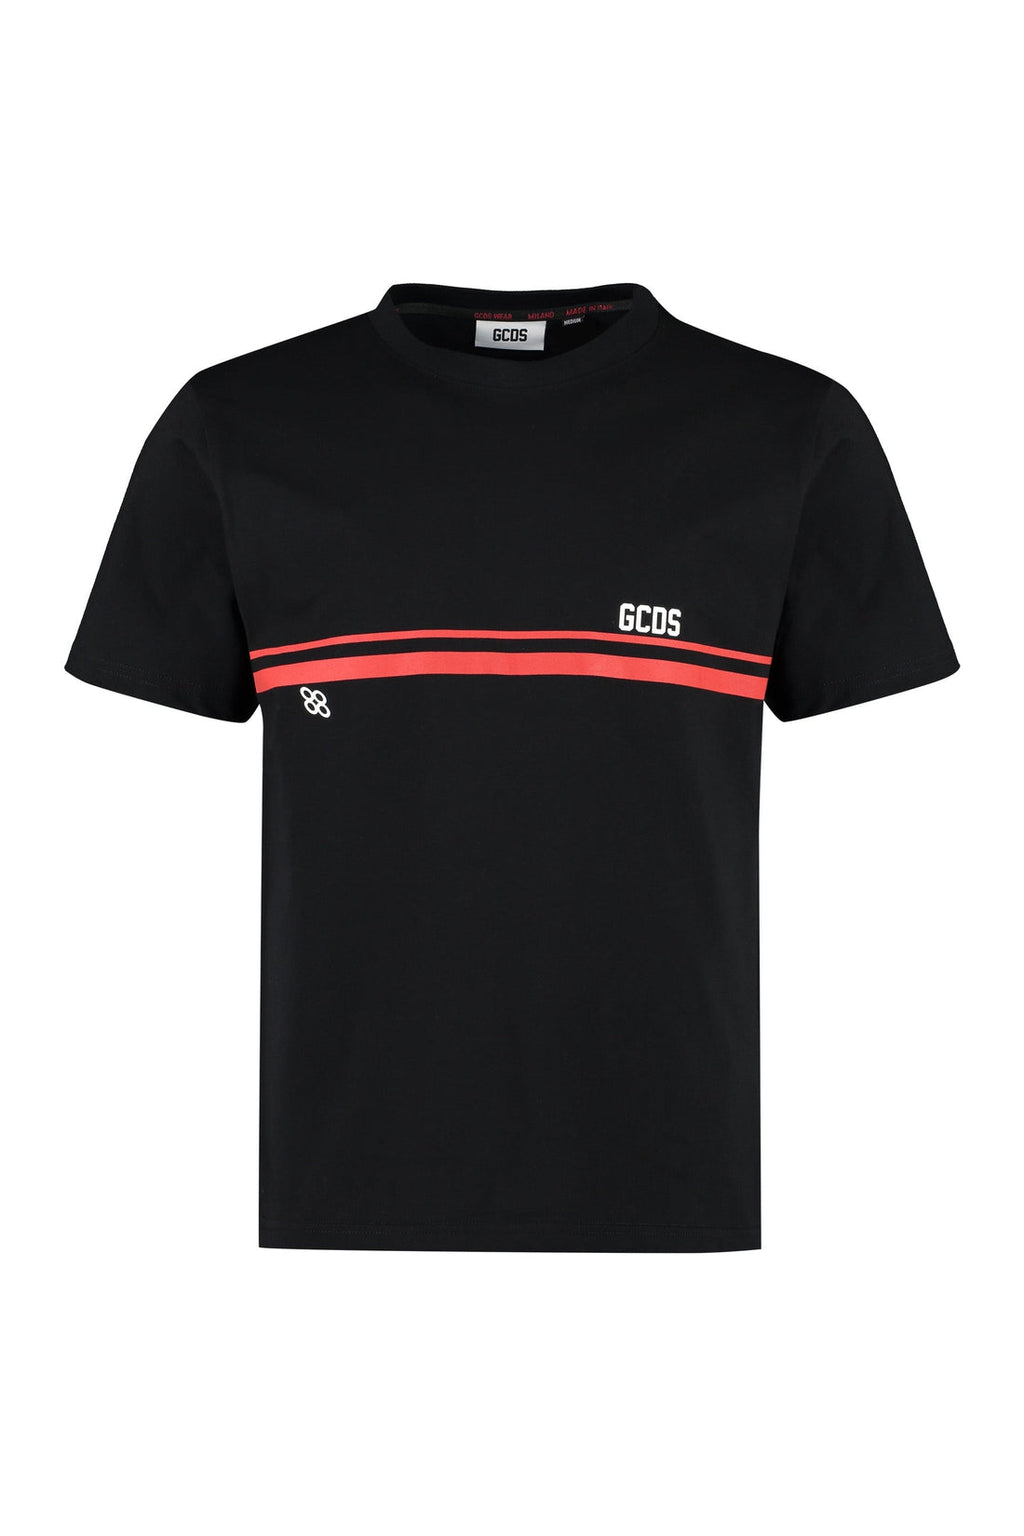 GCDS-OUTLET-SALE-Cotton crew-neck T-shirt-ARCHIVIST